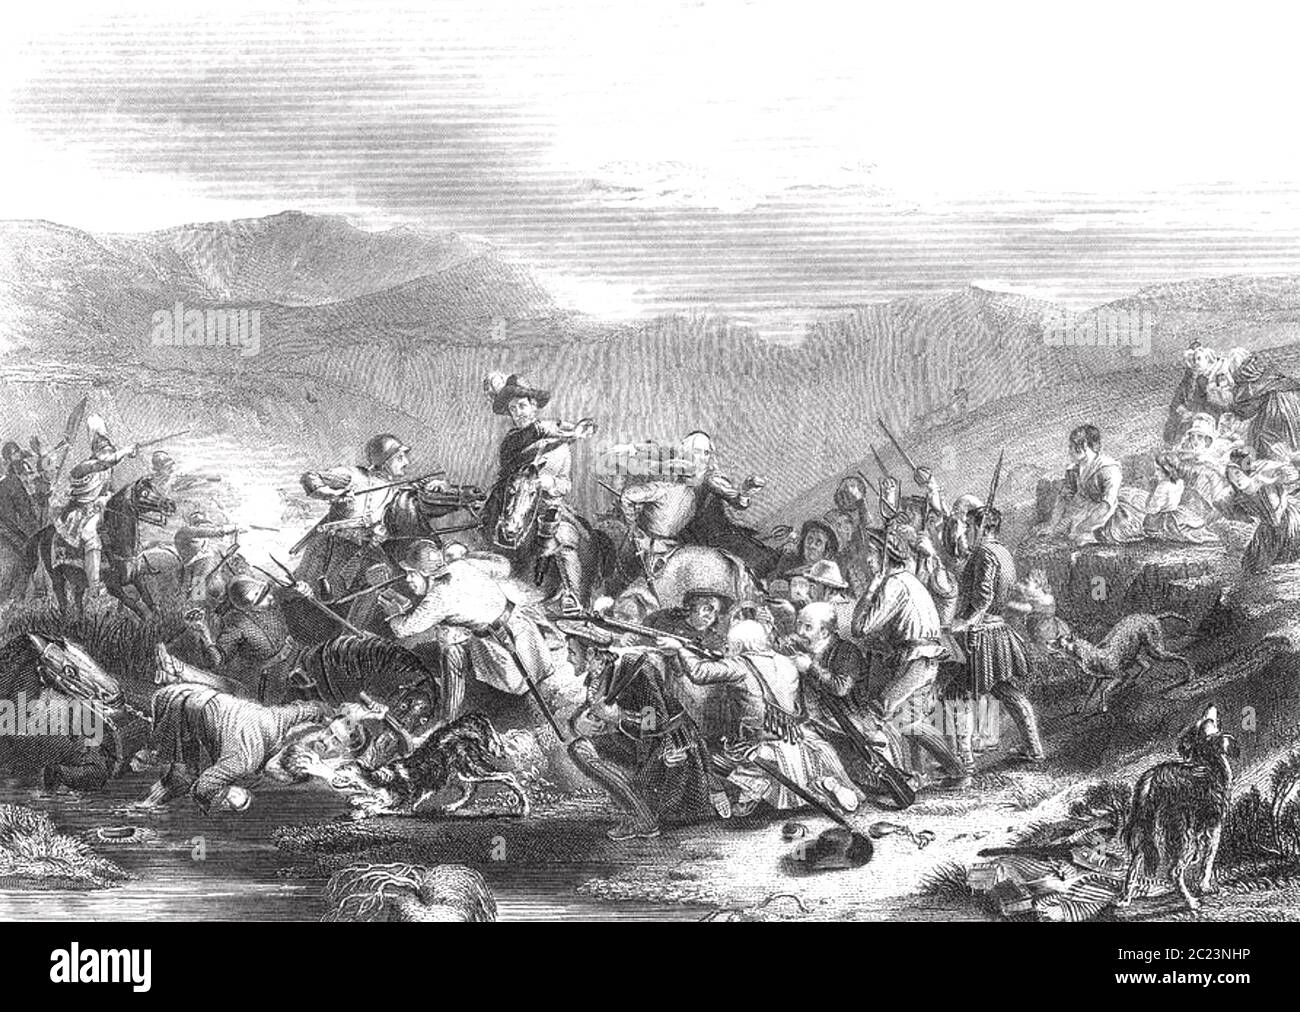 BATTAGLIA di DRUMCLOG 1 giugno 1679, Lanarkshire meridionale, Scozia. I soldati reali guidati da John Graham sono sconfitti dai Covenanters. Foto Stock